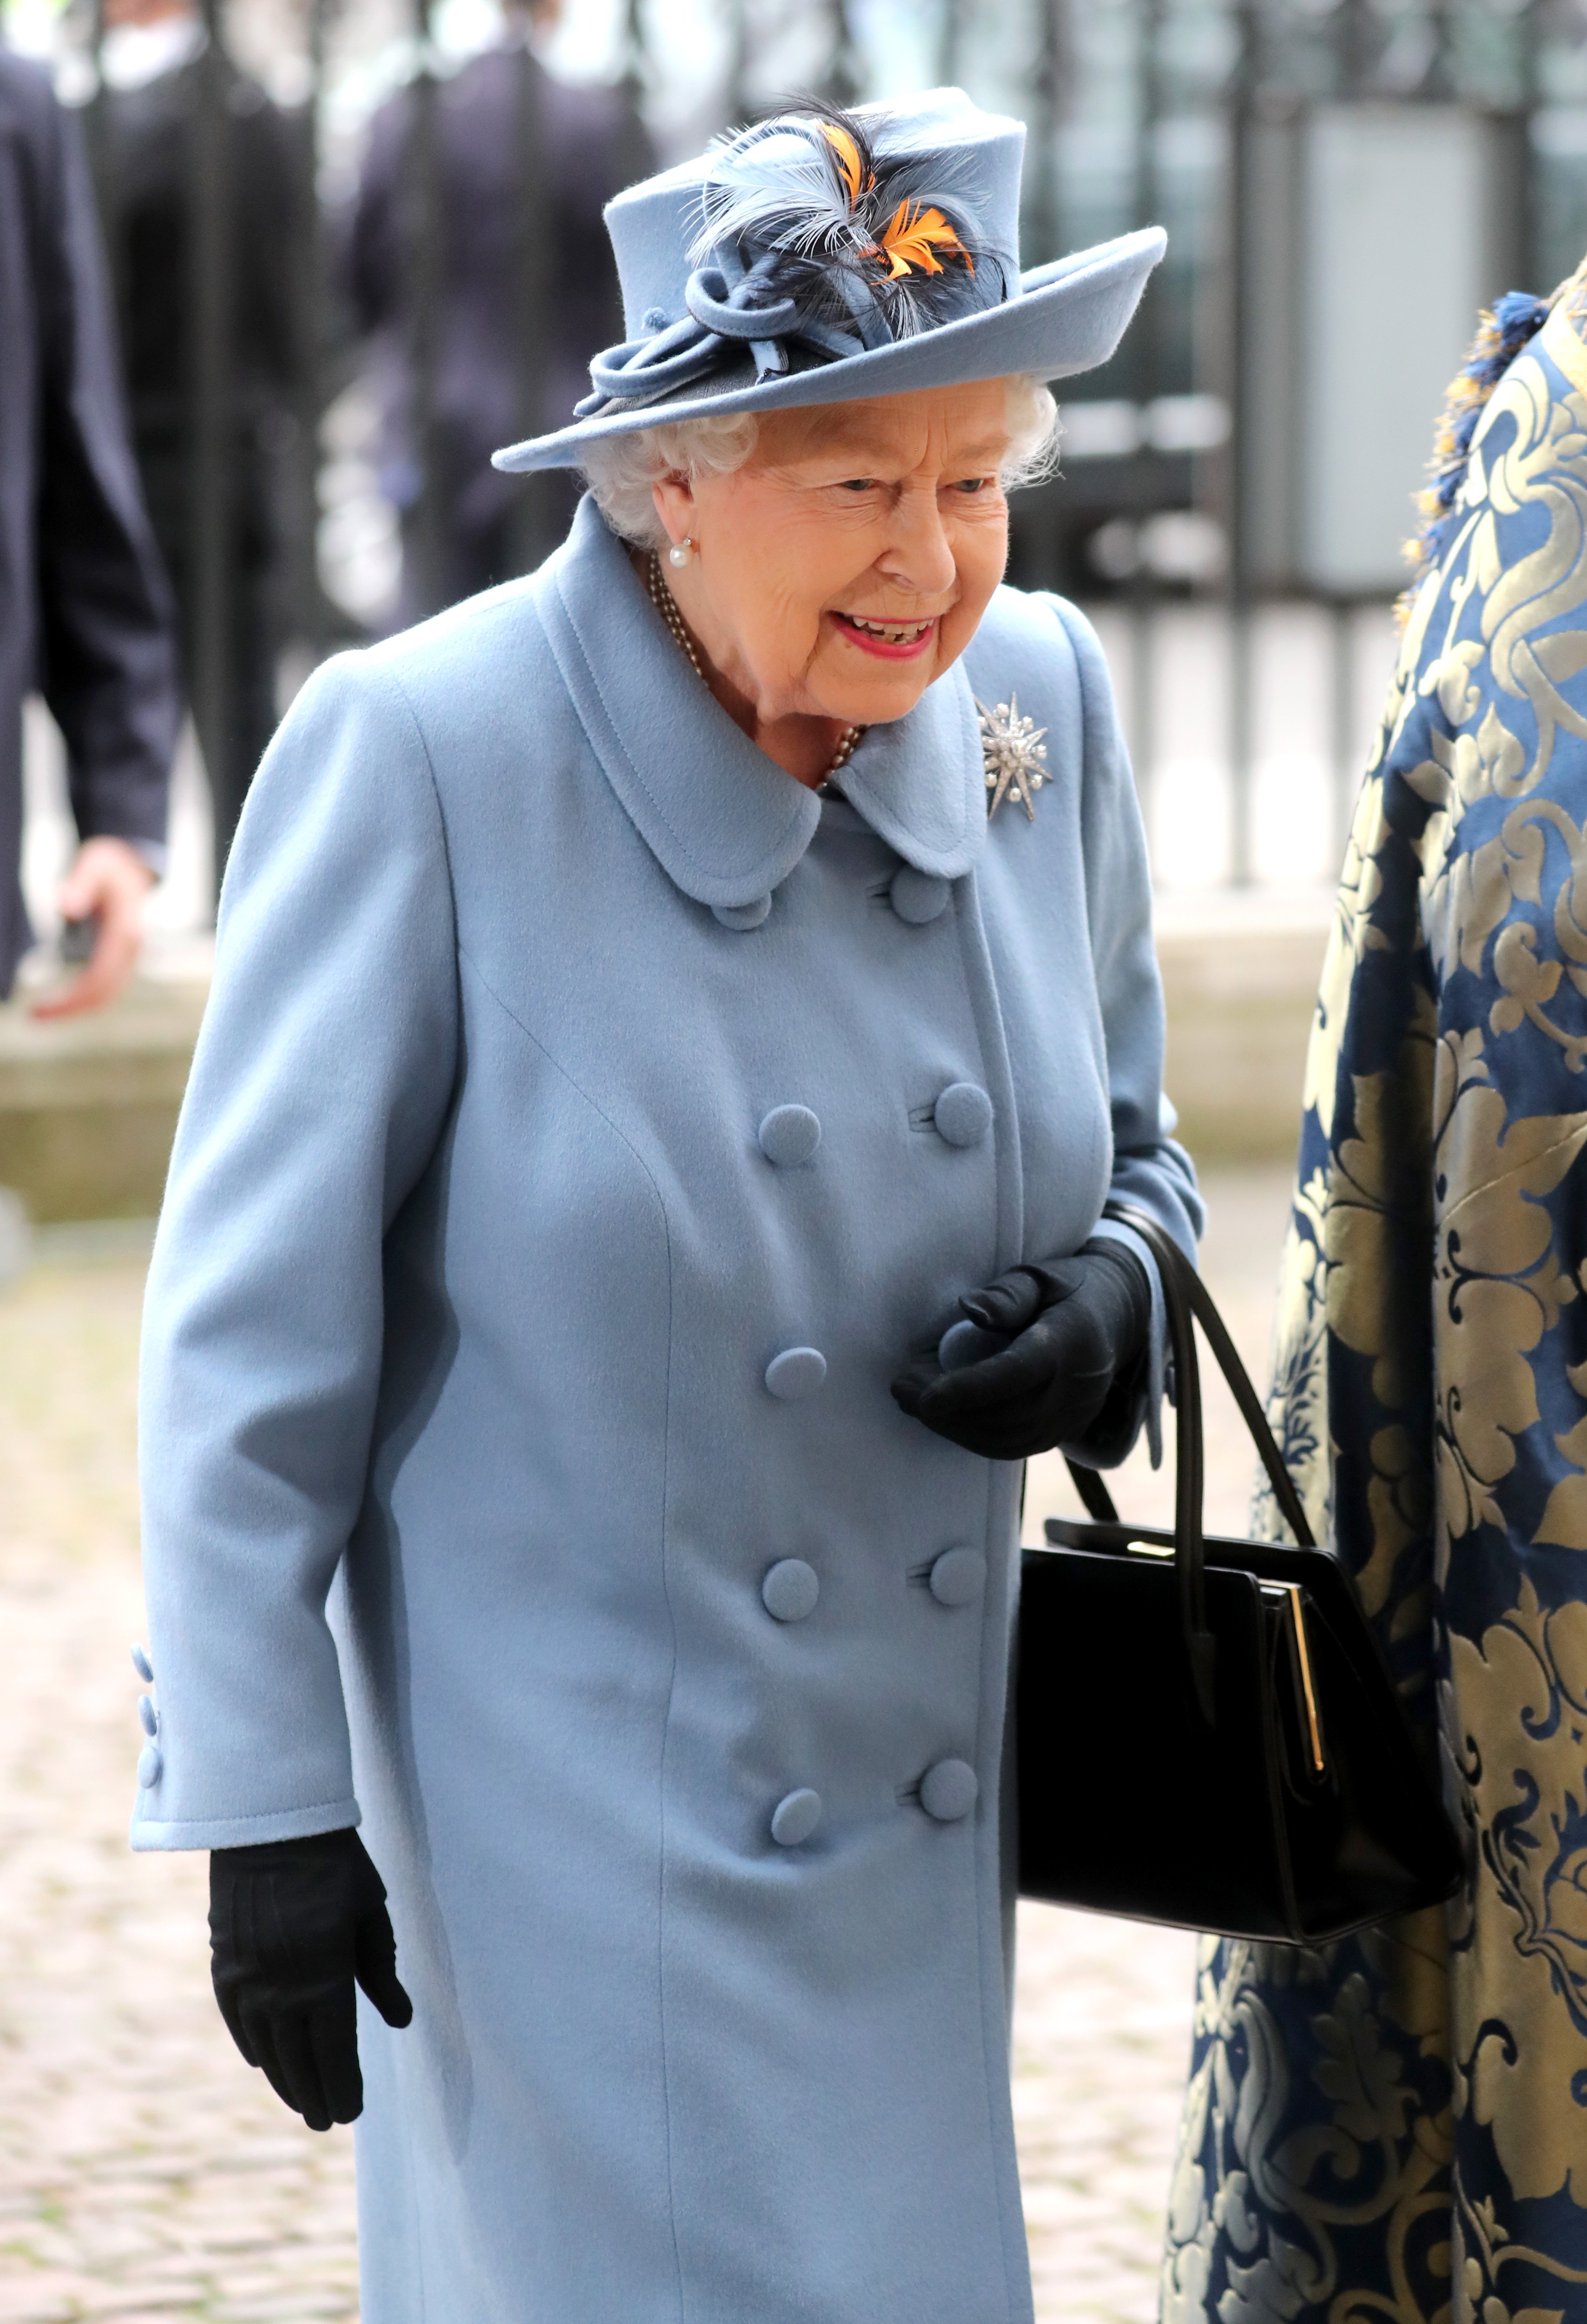 La reina Elizabeth II asiste al Commonwealth Day Service 2020 en la Abadía de Westminster el 9 de marzo de 2020 en Londres, Inglaterra. | Foto: Getty Images